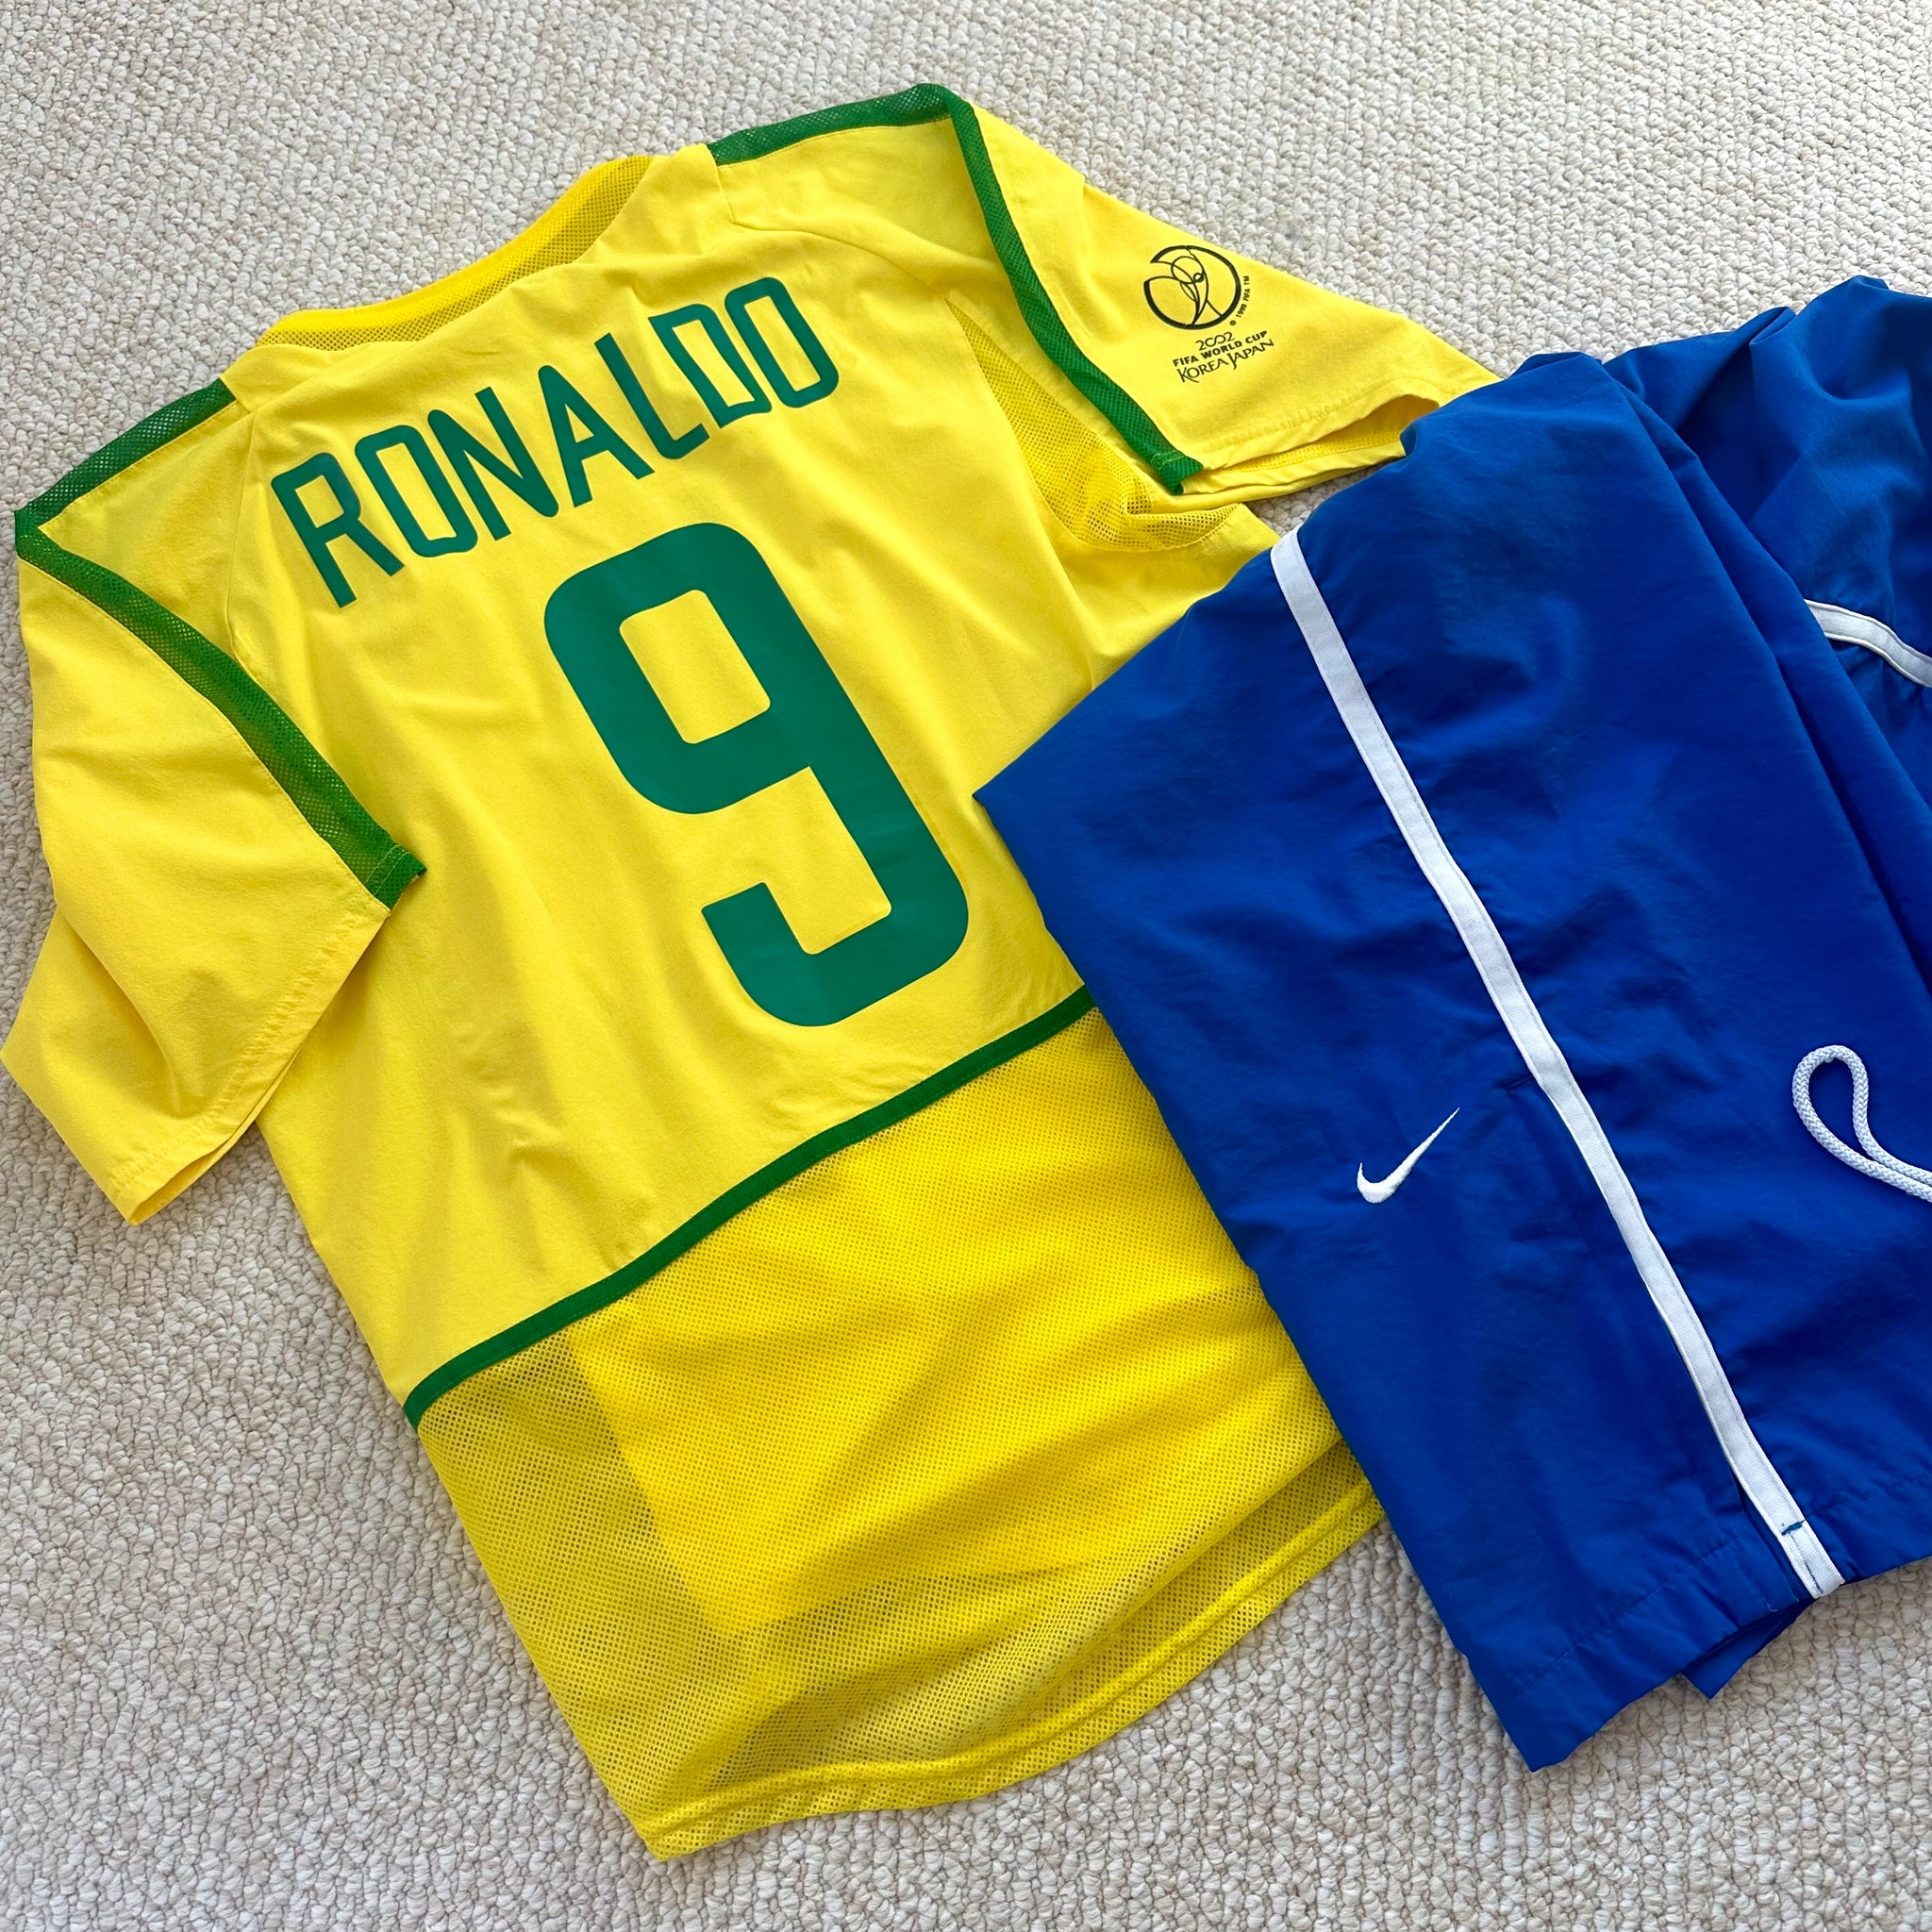 Vintage Nike #7 Ronaldinho 2000 Away Football Kit (L)